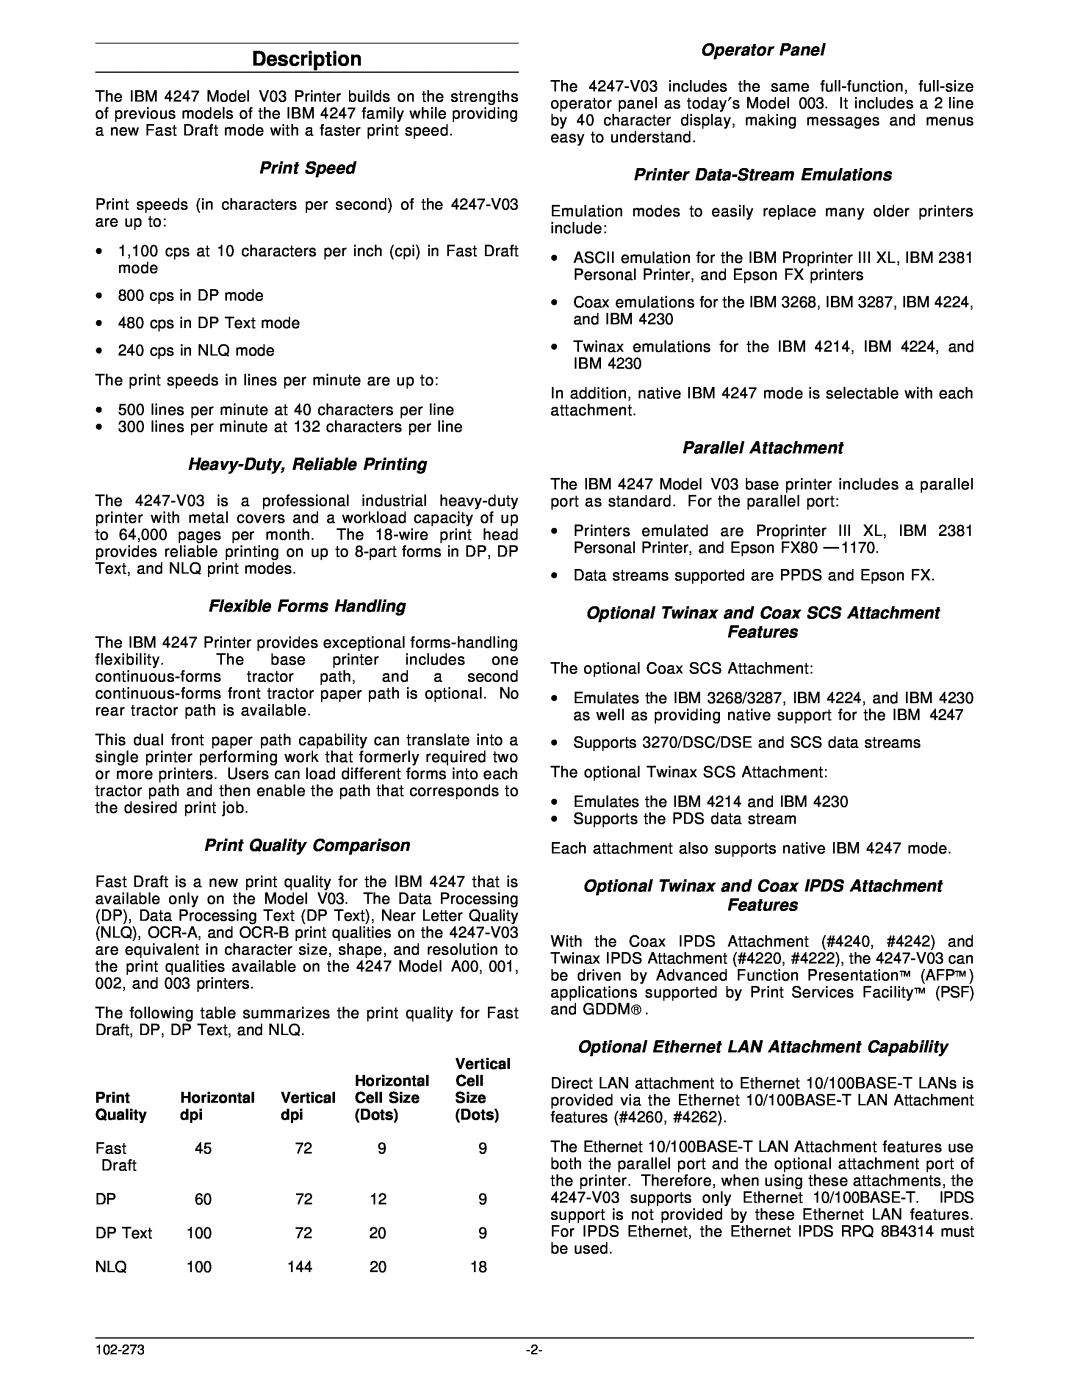 IBM V03 manual Description 